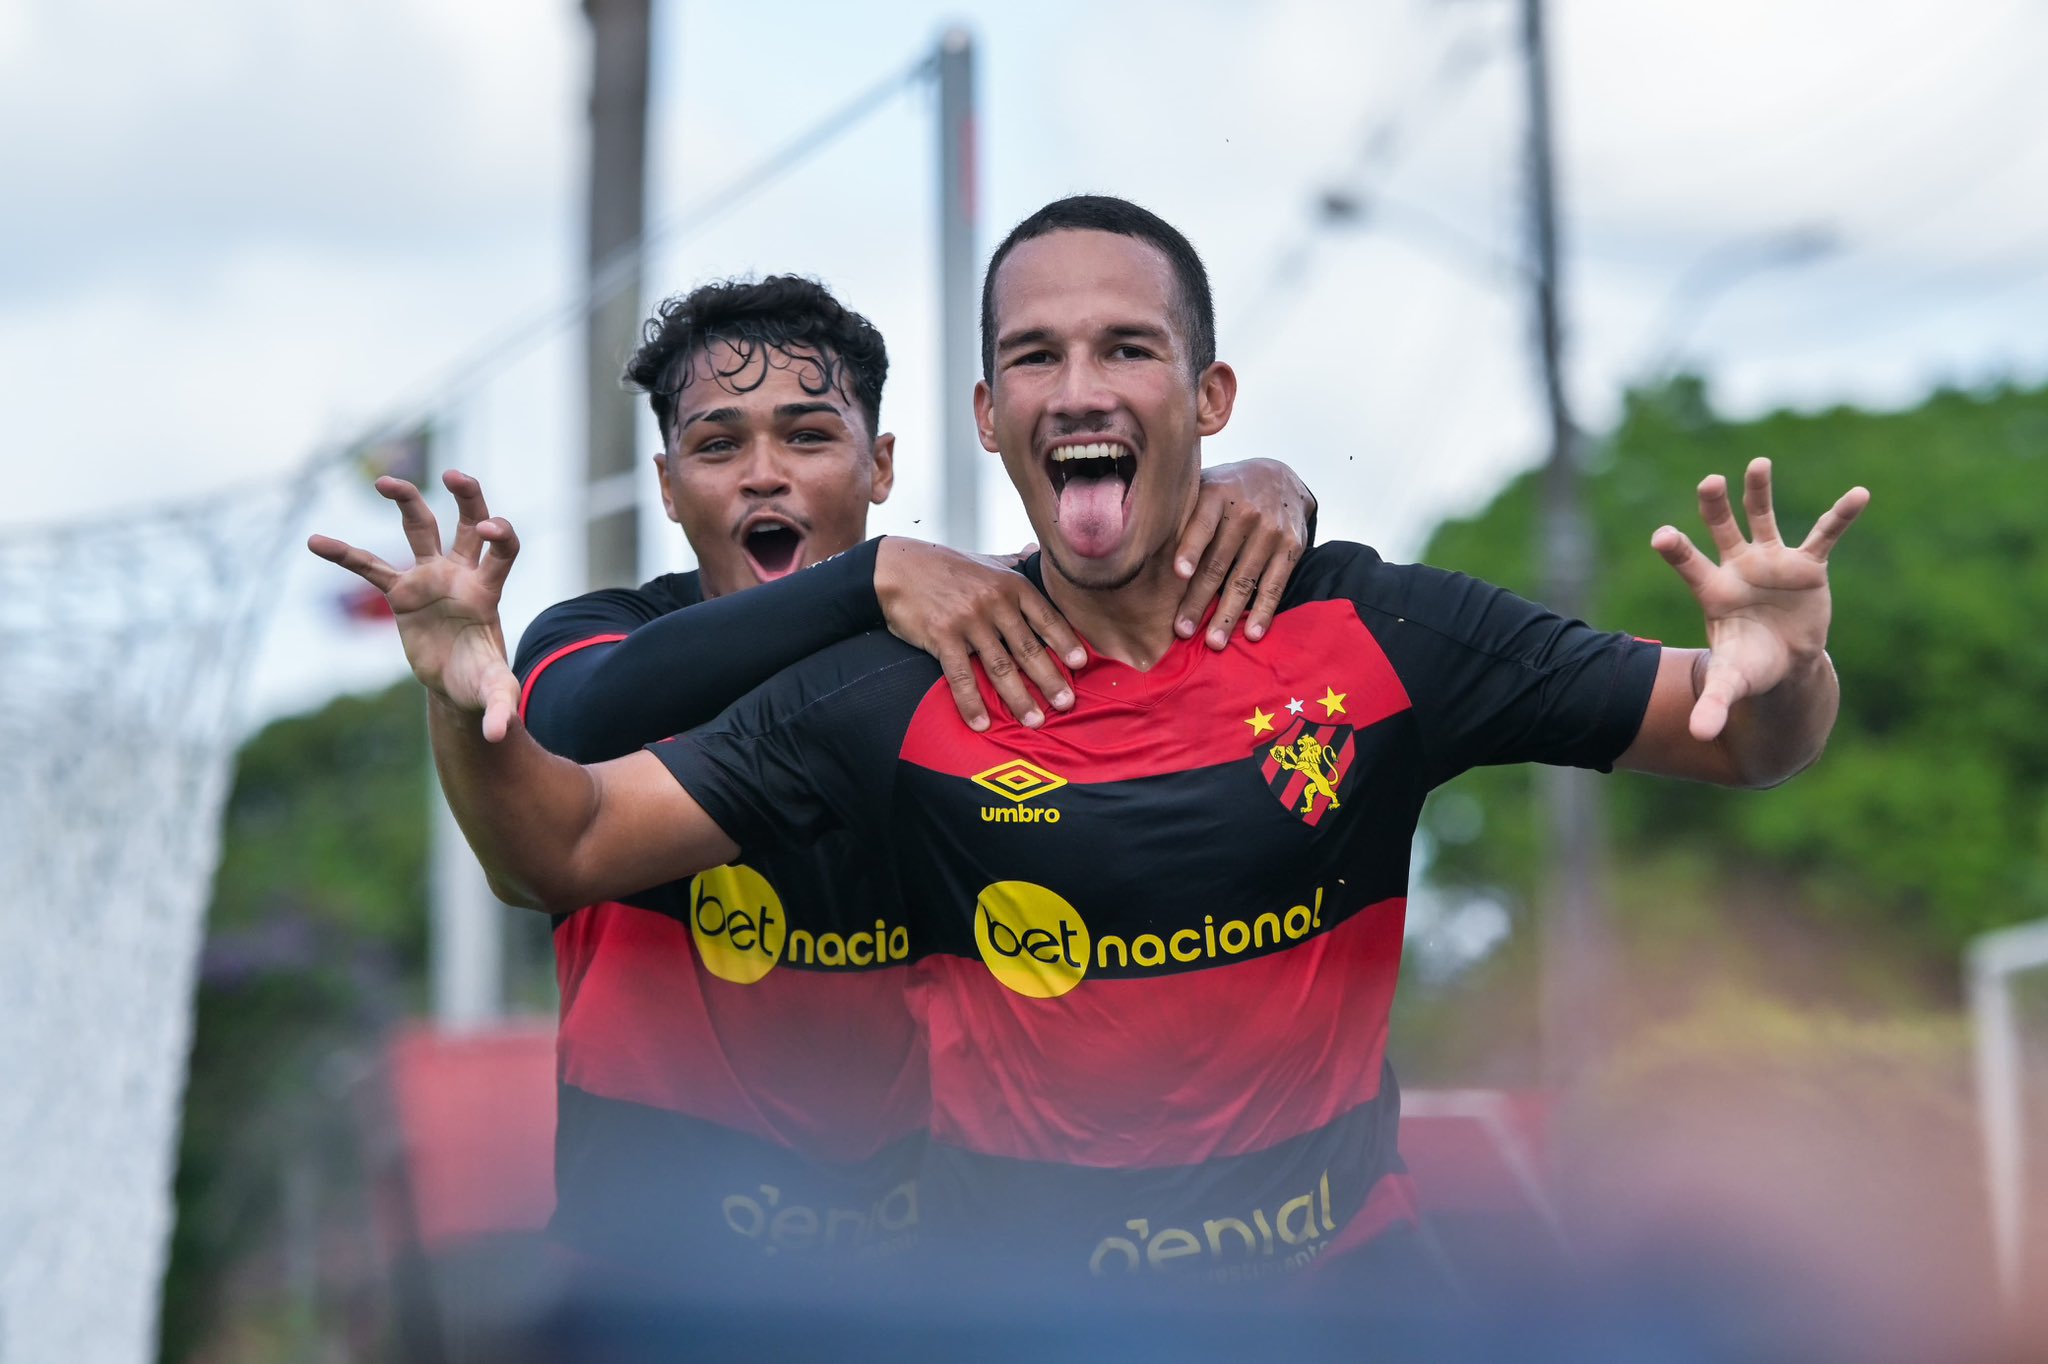 Sport Club do Recife on X: Ganhamos, seu Sidney! 🖤 Obrigado por ser Sport  e encantar gerações ao seu redor. Bom descanso e nossos sentimentos a toda  a família. / X